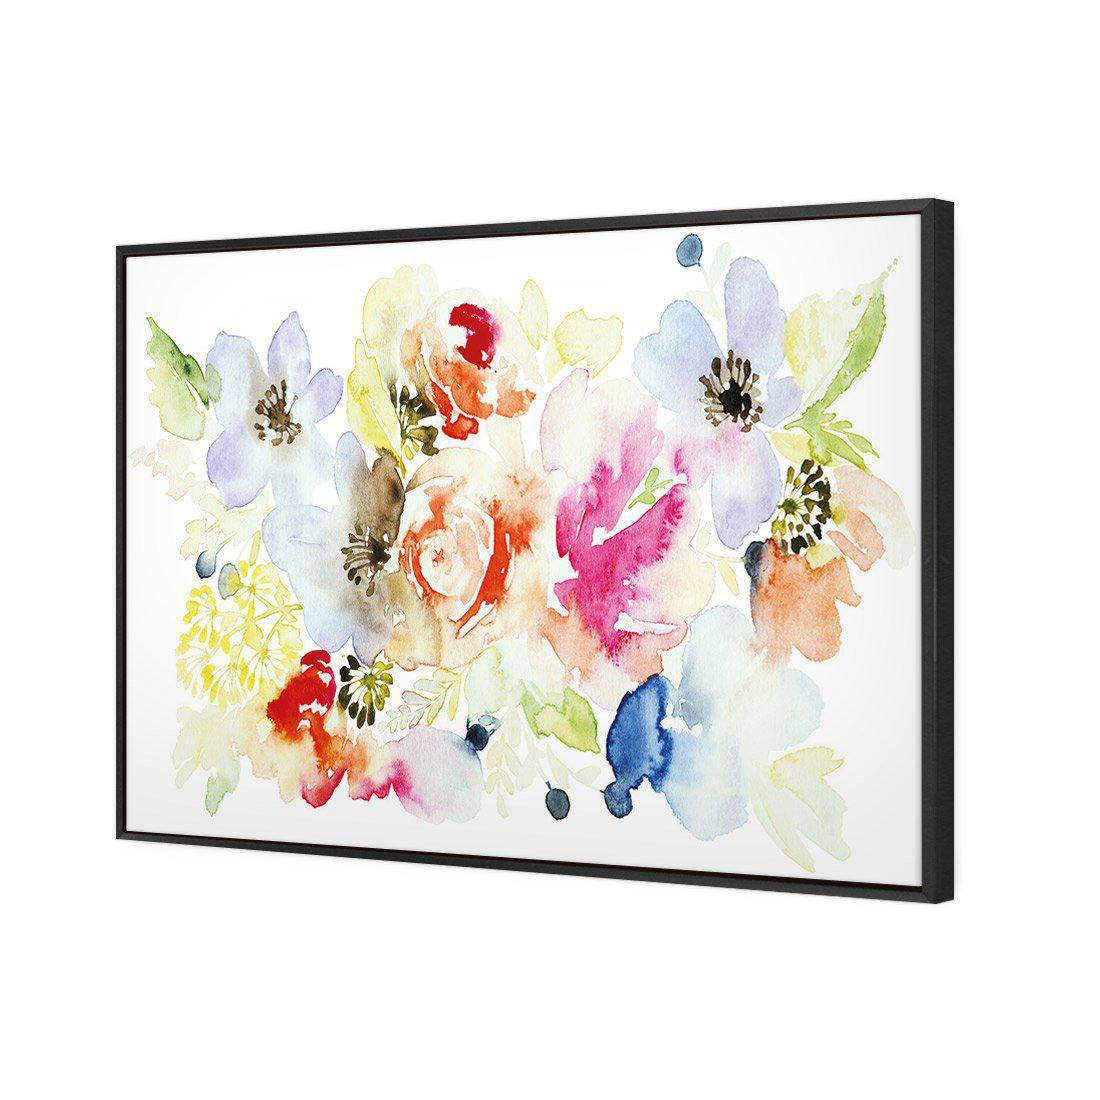 Floral Array Canvas Art-Canvas-Wall Art Designs-45x30cm-Canvas - Black Frame-Wall Art Designs